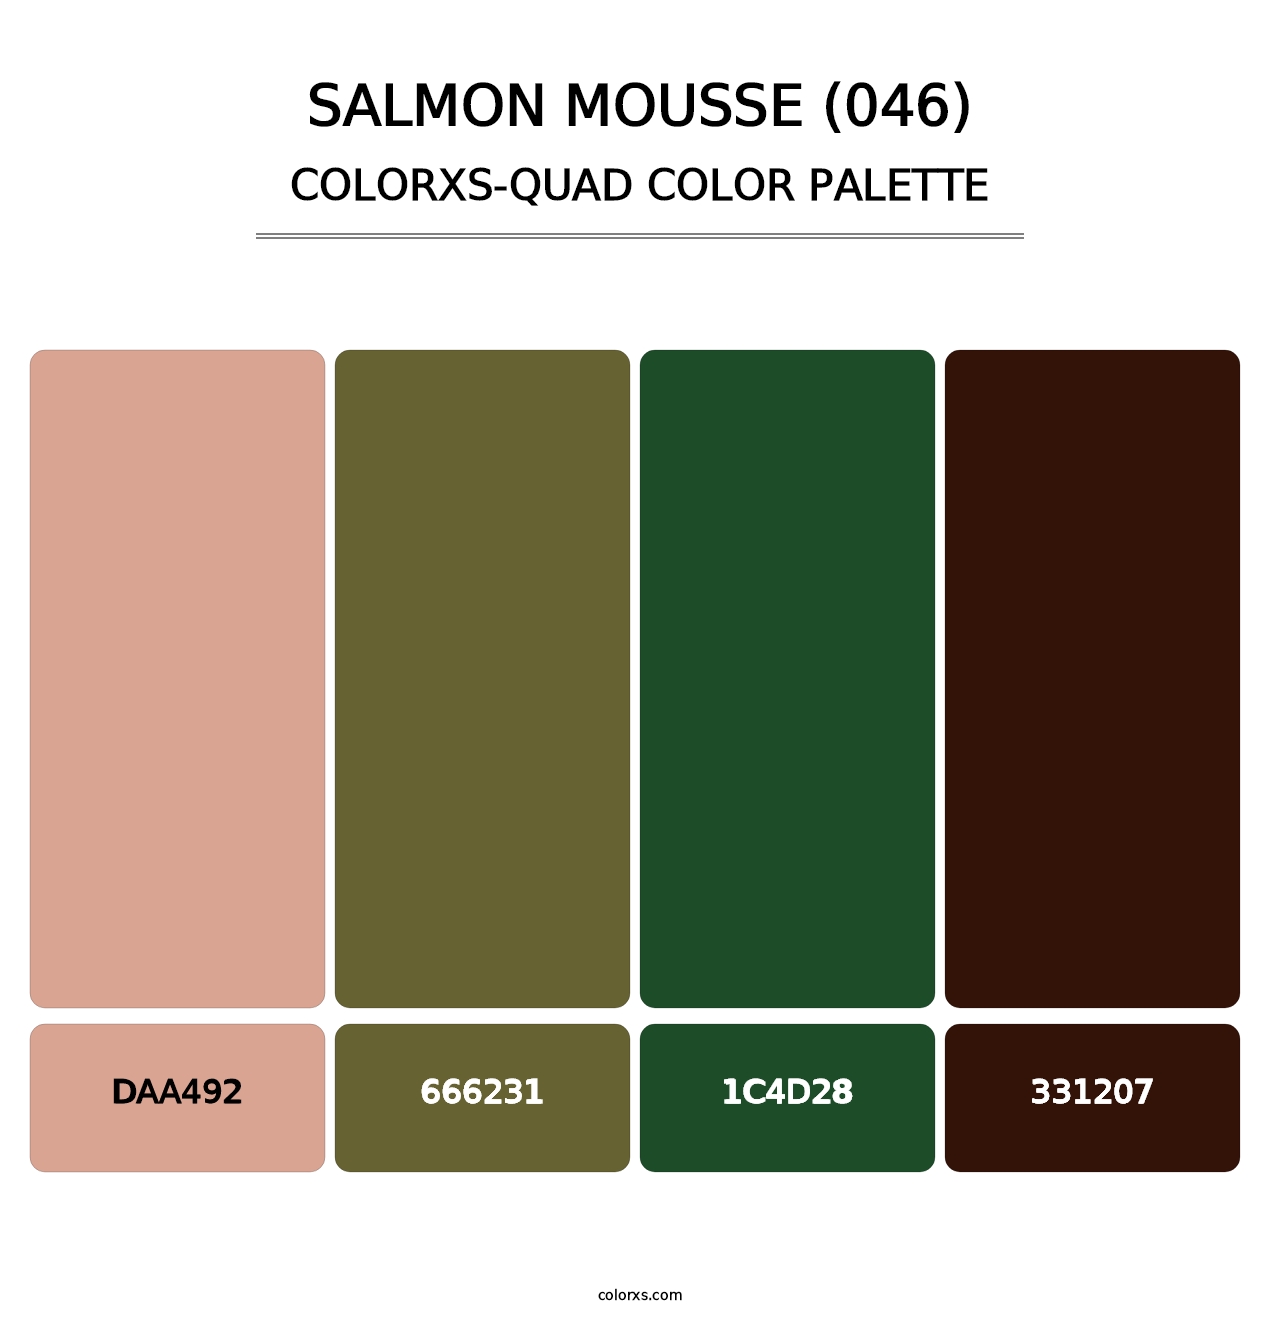 Salmon Mousse (046) - Colorxs Quad Palette